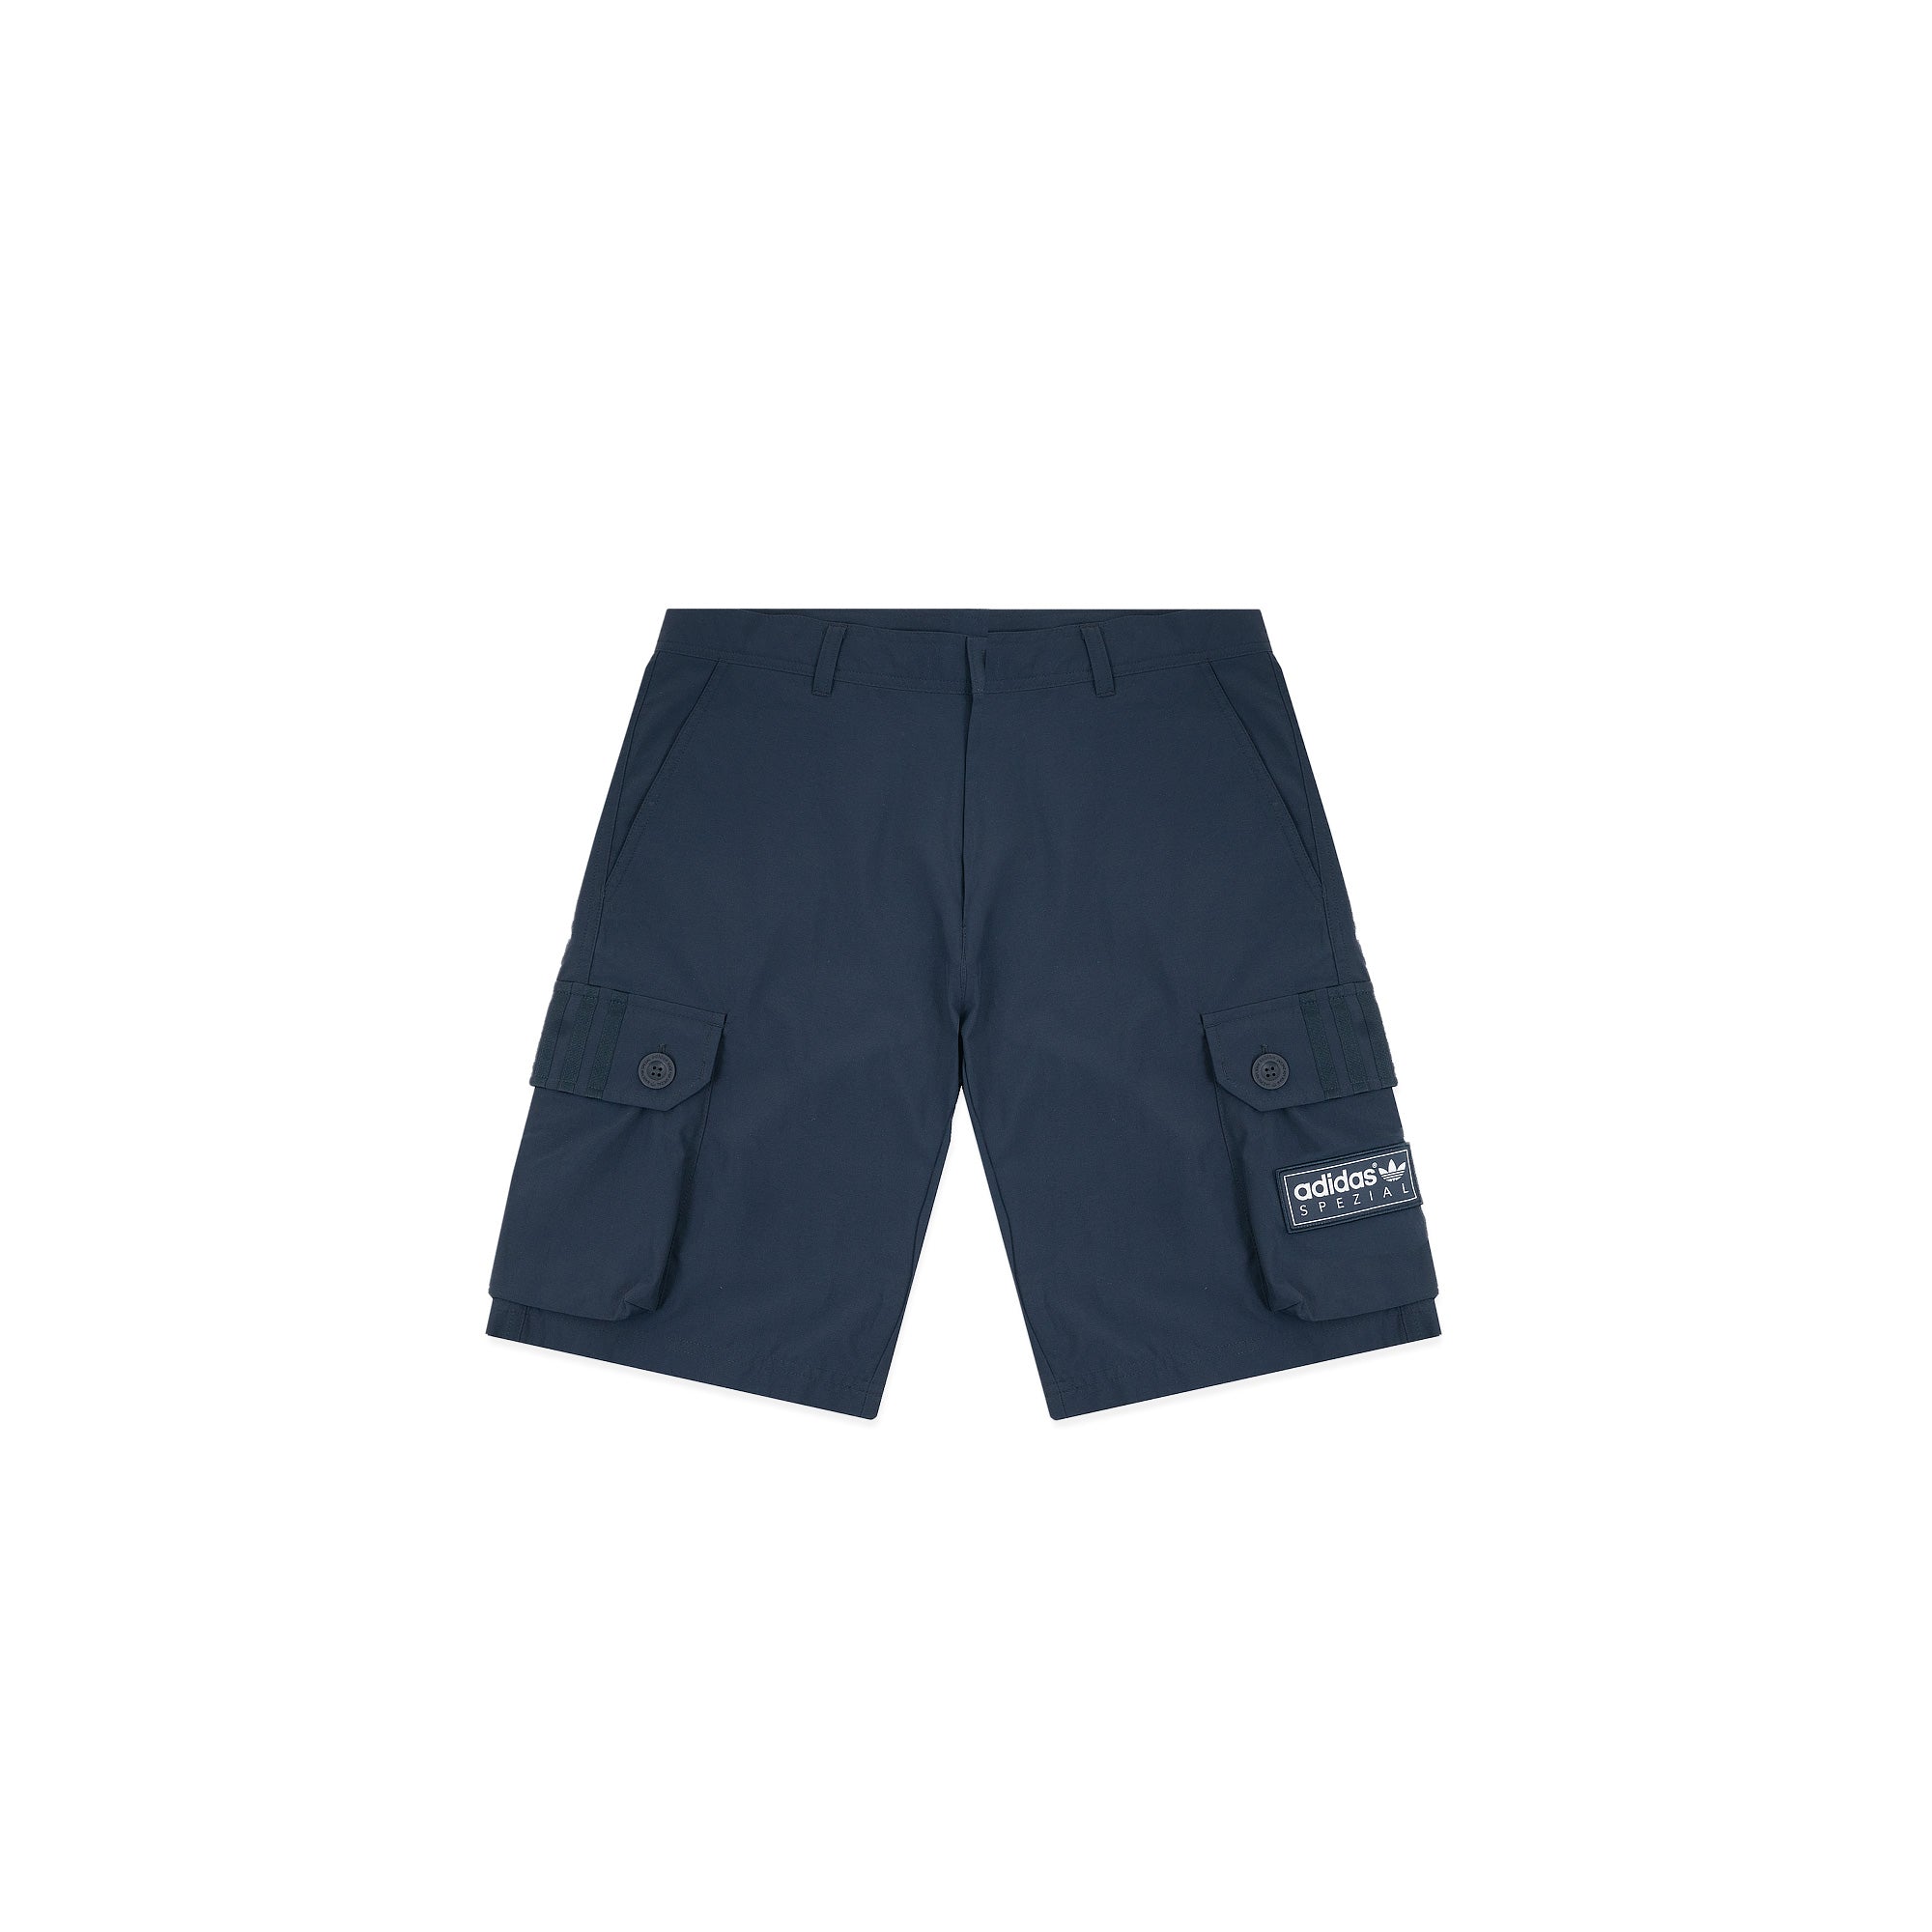 aldwych cargo shorts